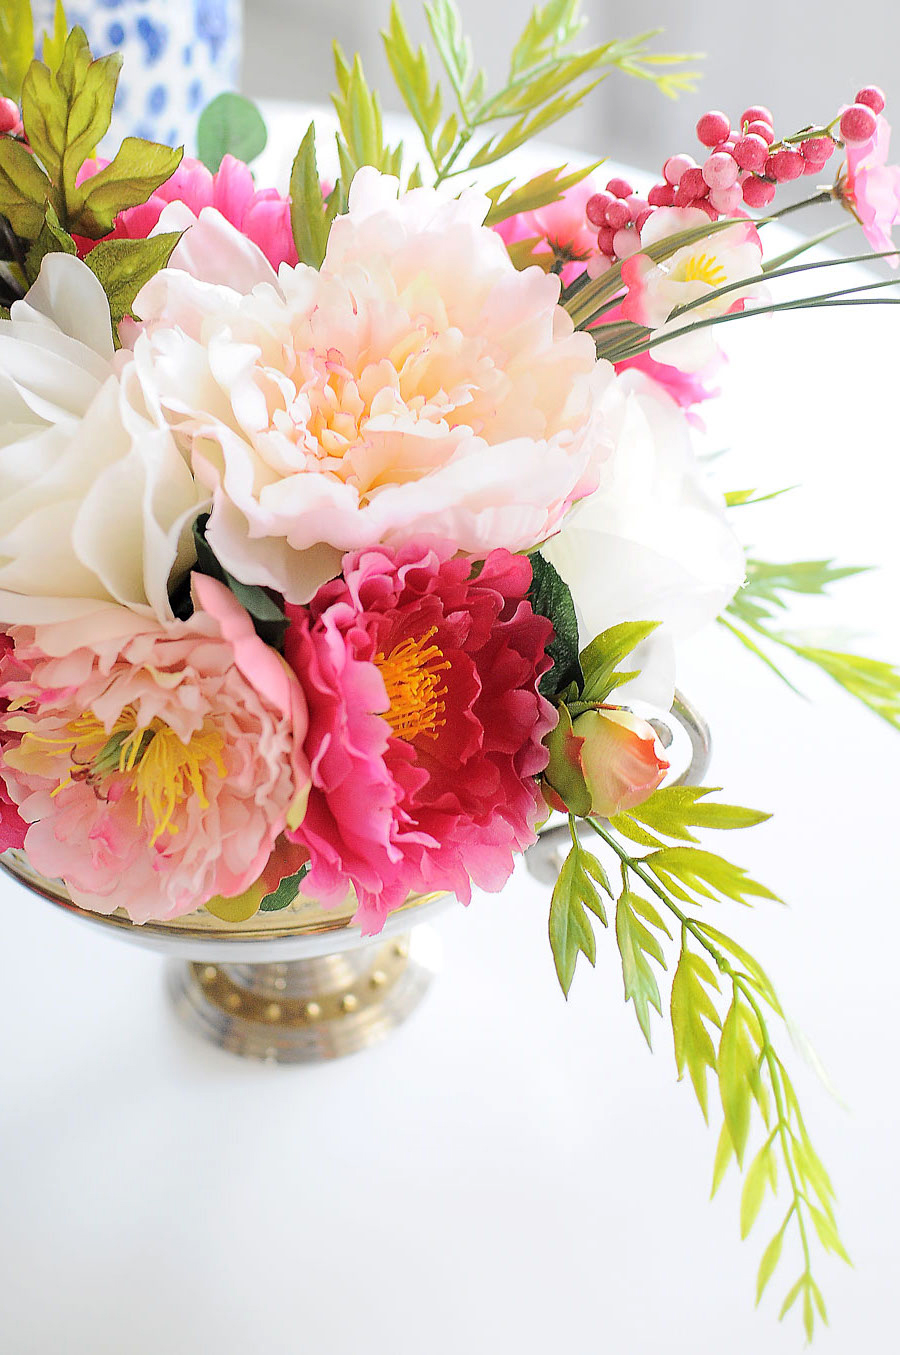 preciosas maneras de decorar la mesa con flores, ideas de decoración de mesas originales 